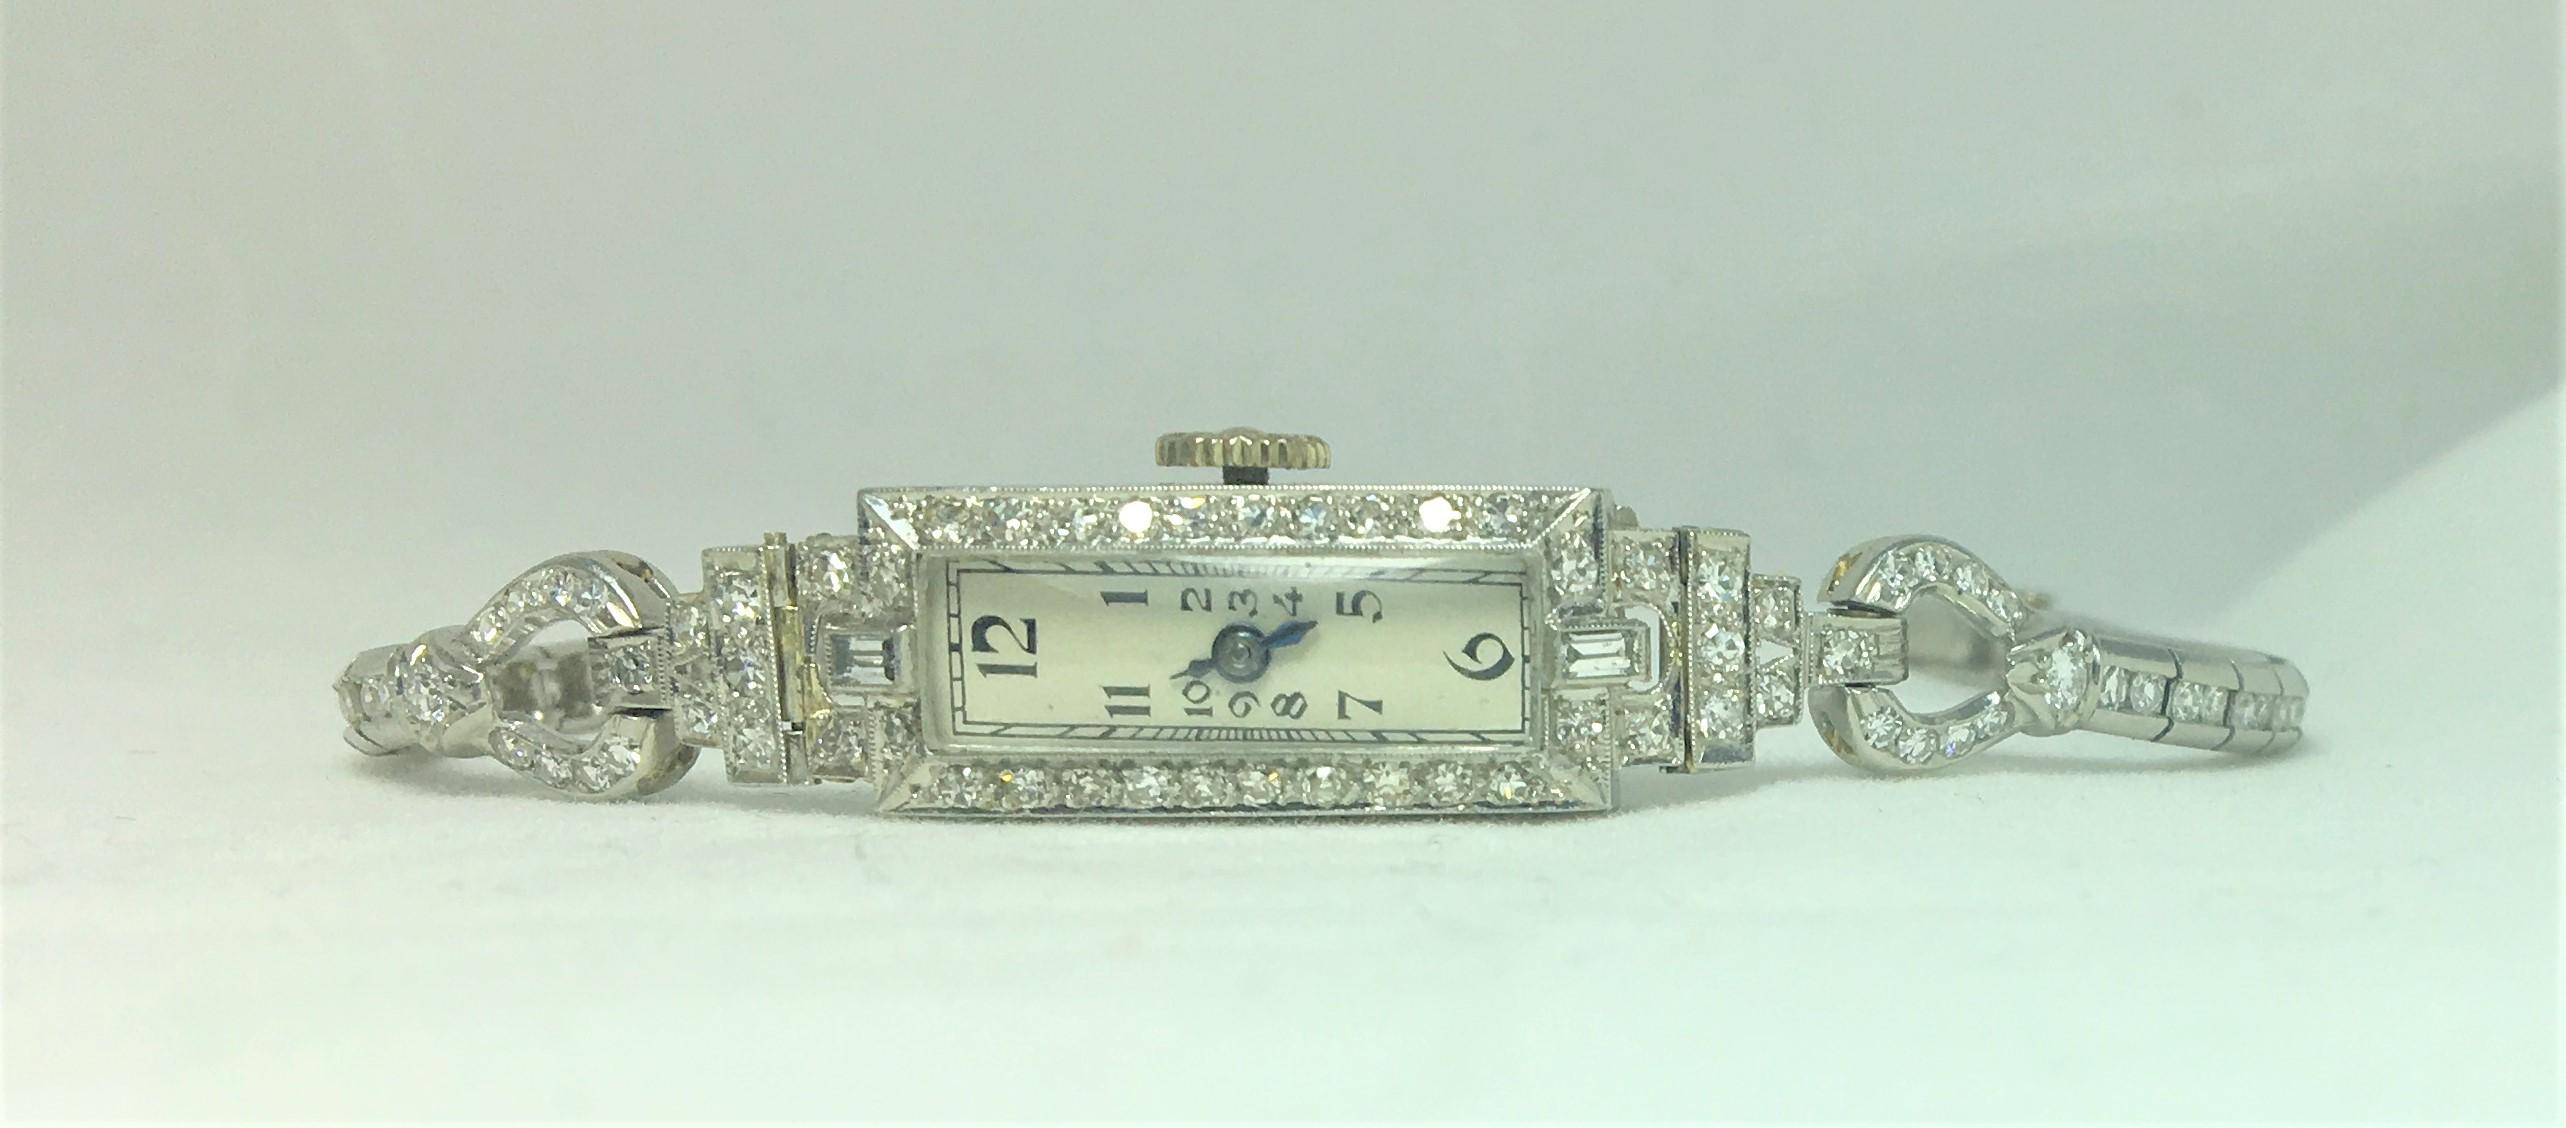 Diese Uhr hat ein schlankes, elegantes Design
Ungefähr 2 Karat Gesamtgewicht der Diamanten,
108 Diamanten mit einer Größe von jeweils etwa 0,01 bis 0,03 Karat
6 Zoll lang
Platin 
Die Uhr funktioniert mit Originalteilen.
Klappschließe mit zweiter